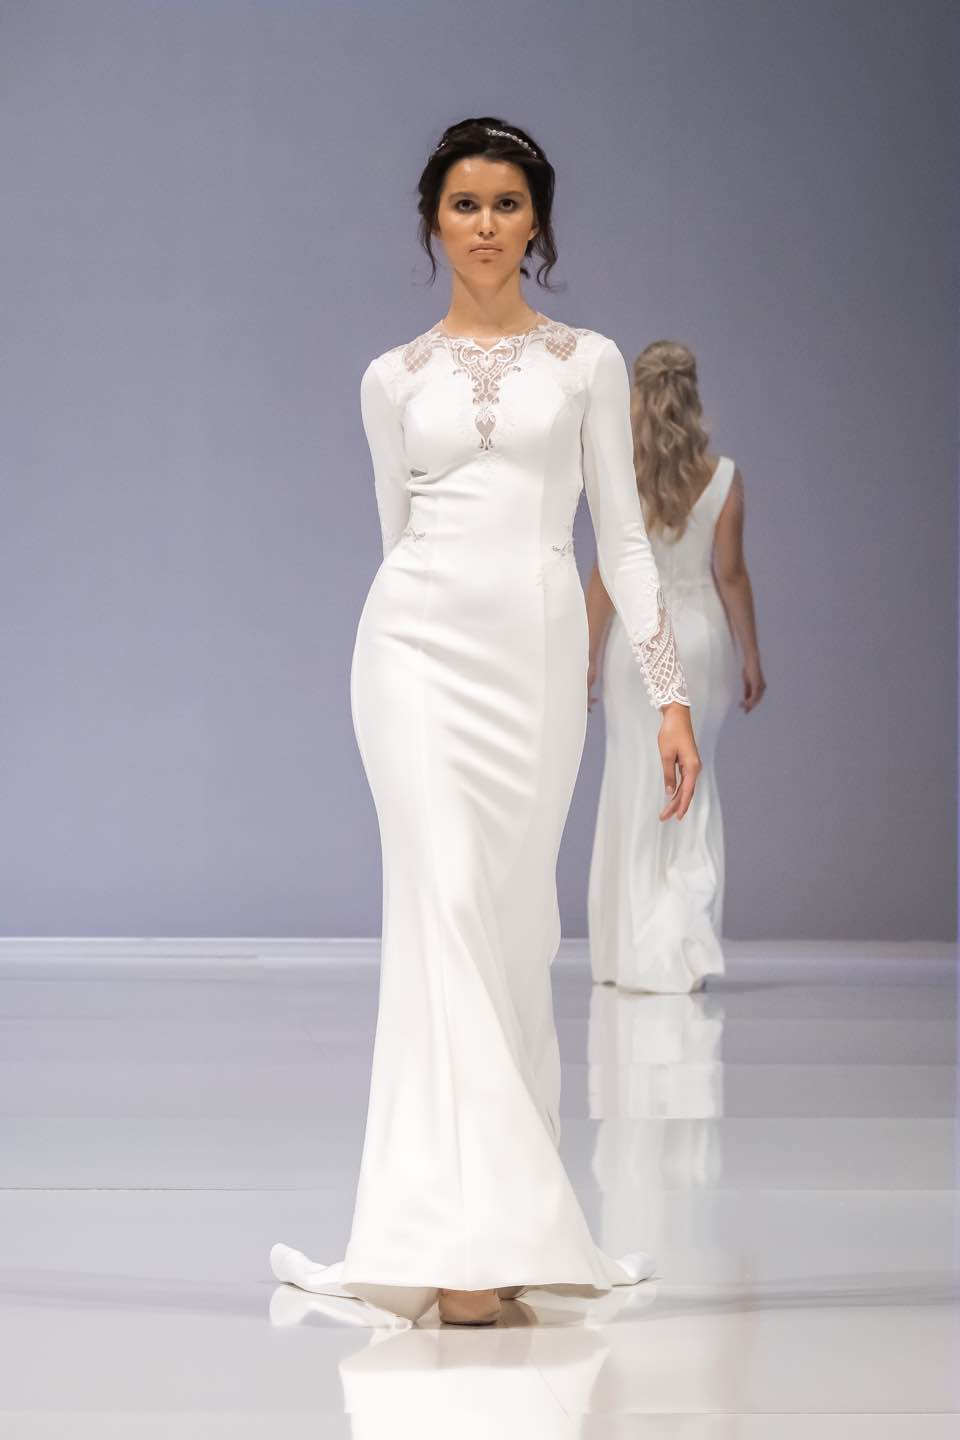 Свадебное платье Rima Lav